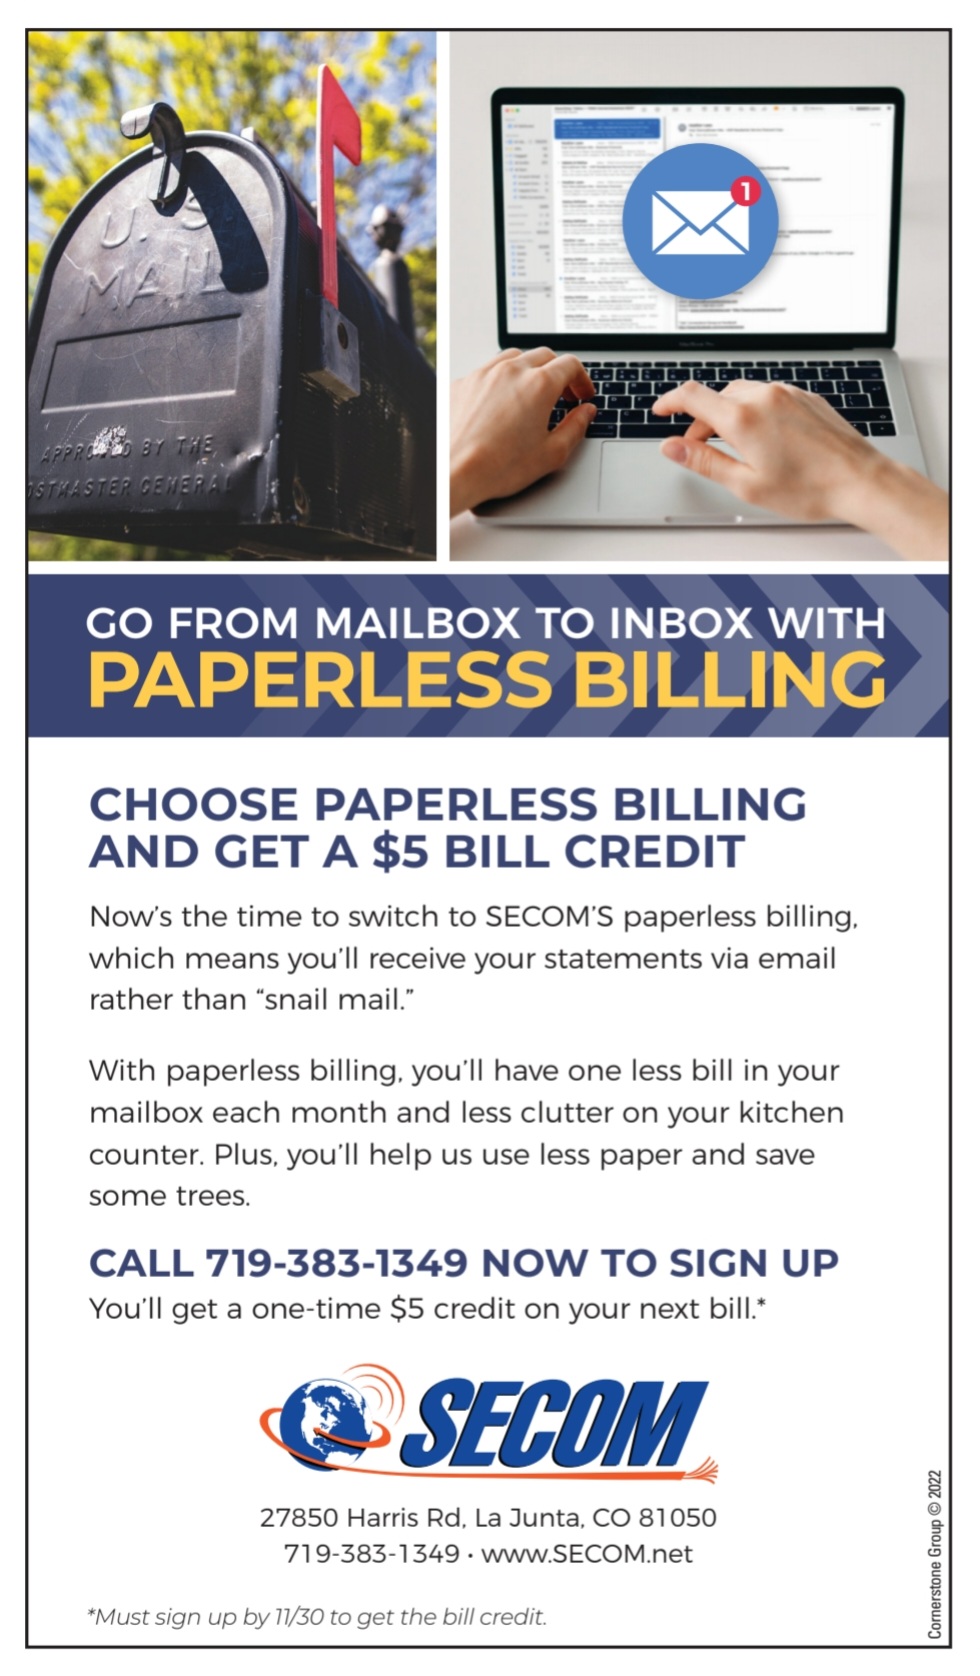 att paperless billing scam